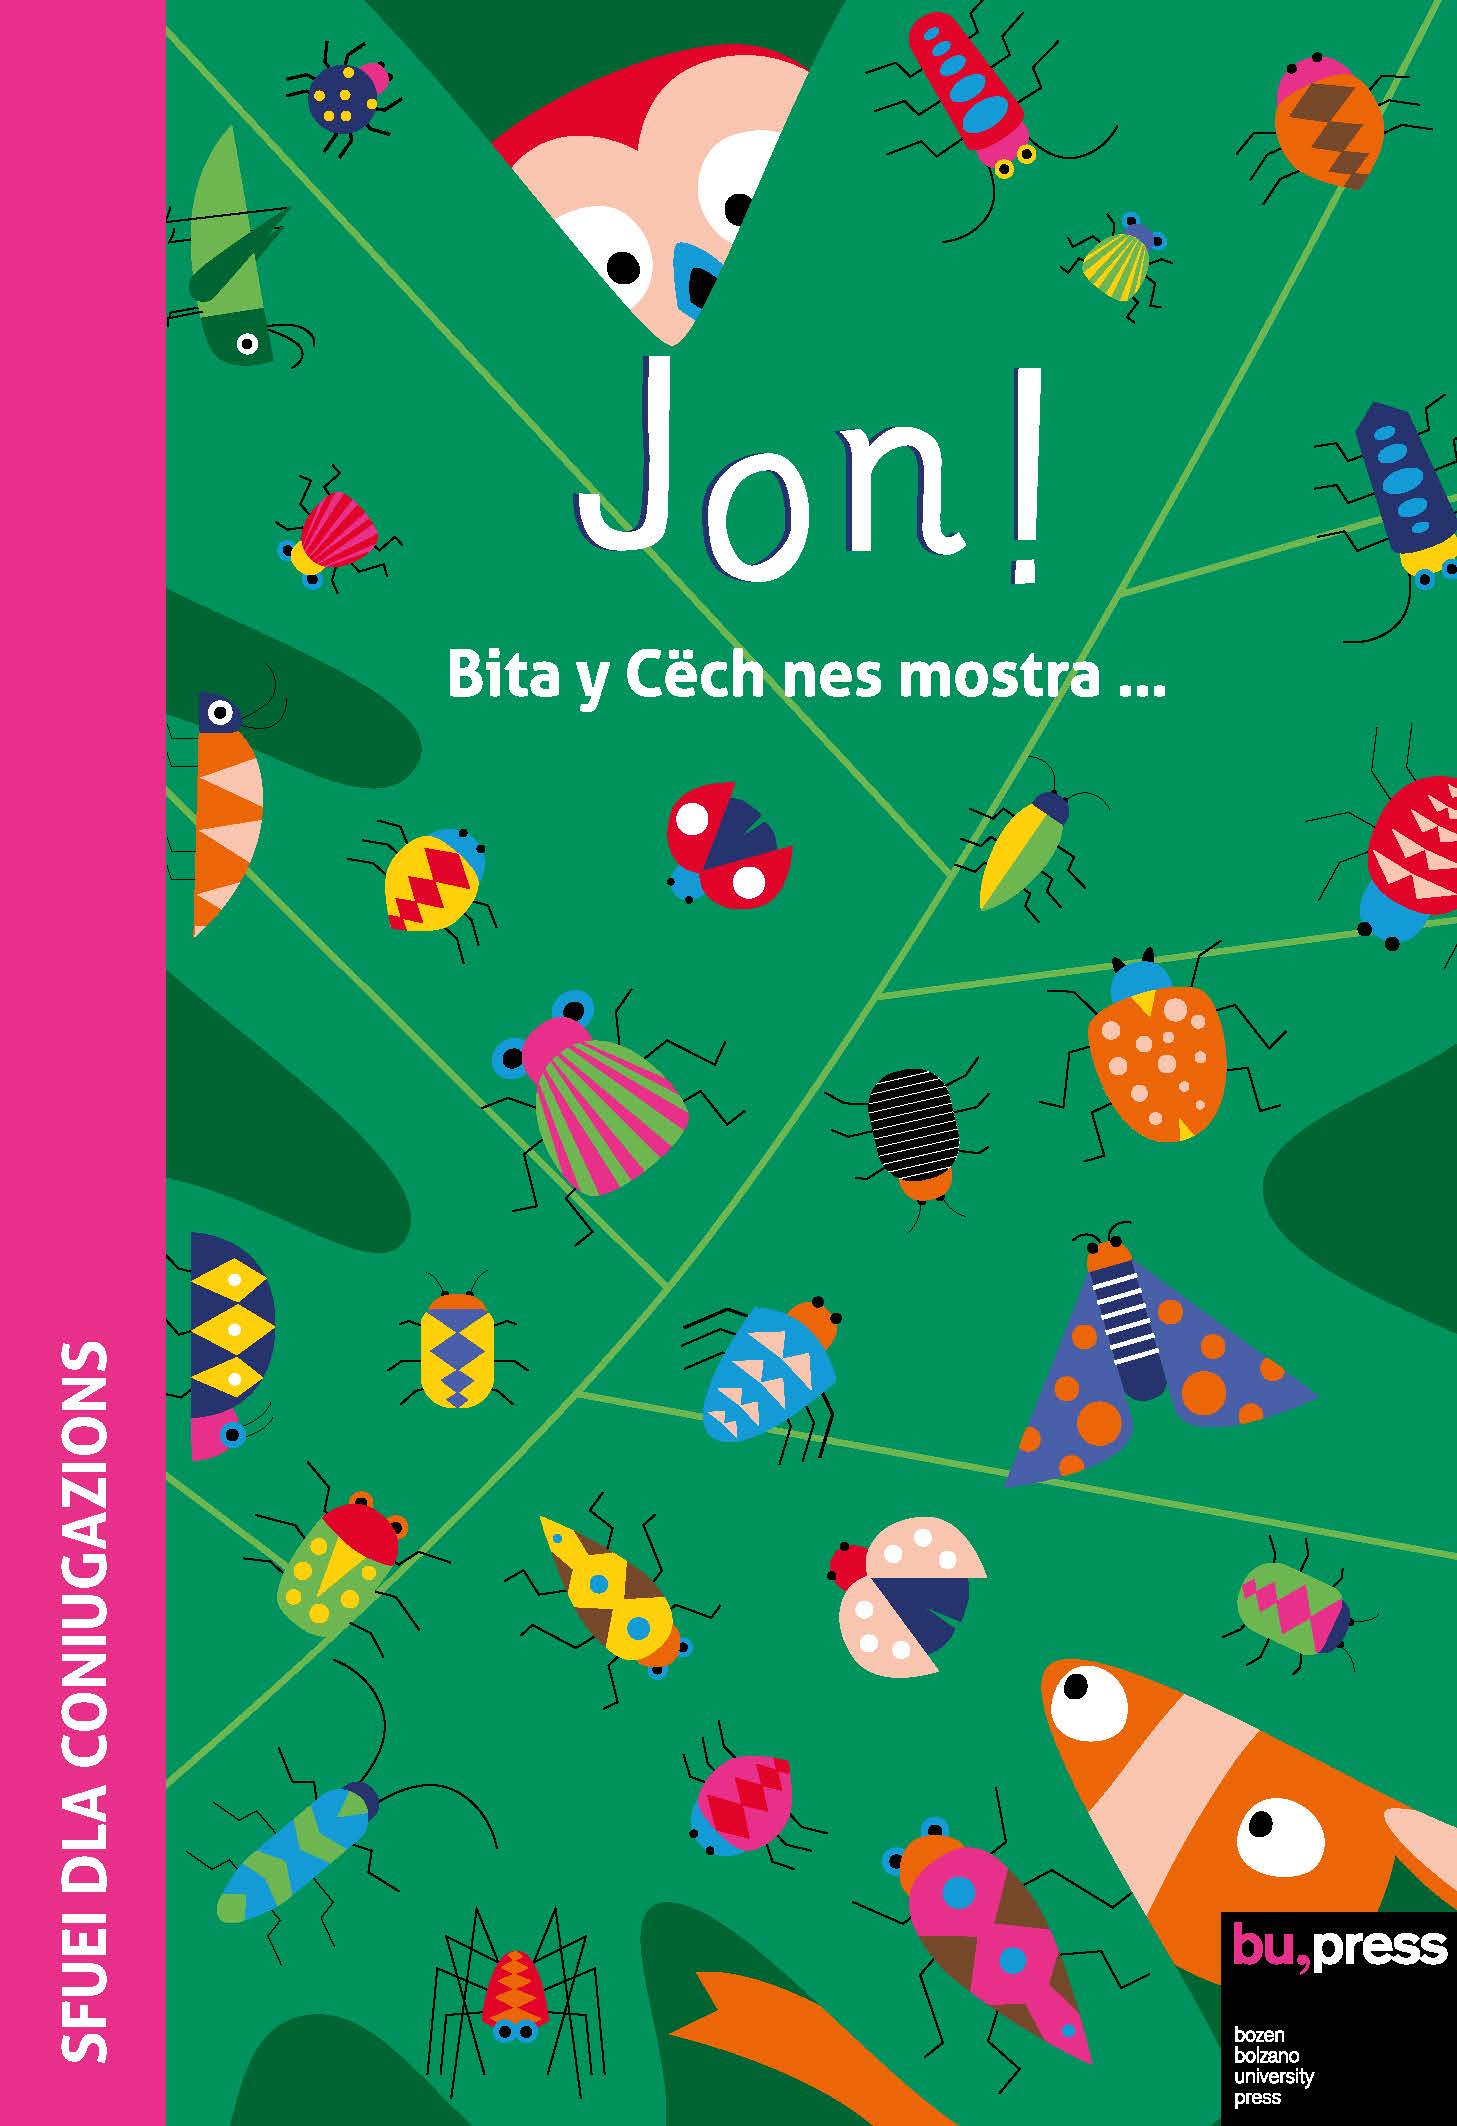 Cover of Jon! Sfuei dla coniugazions